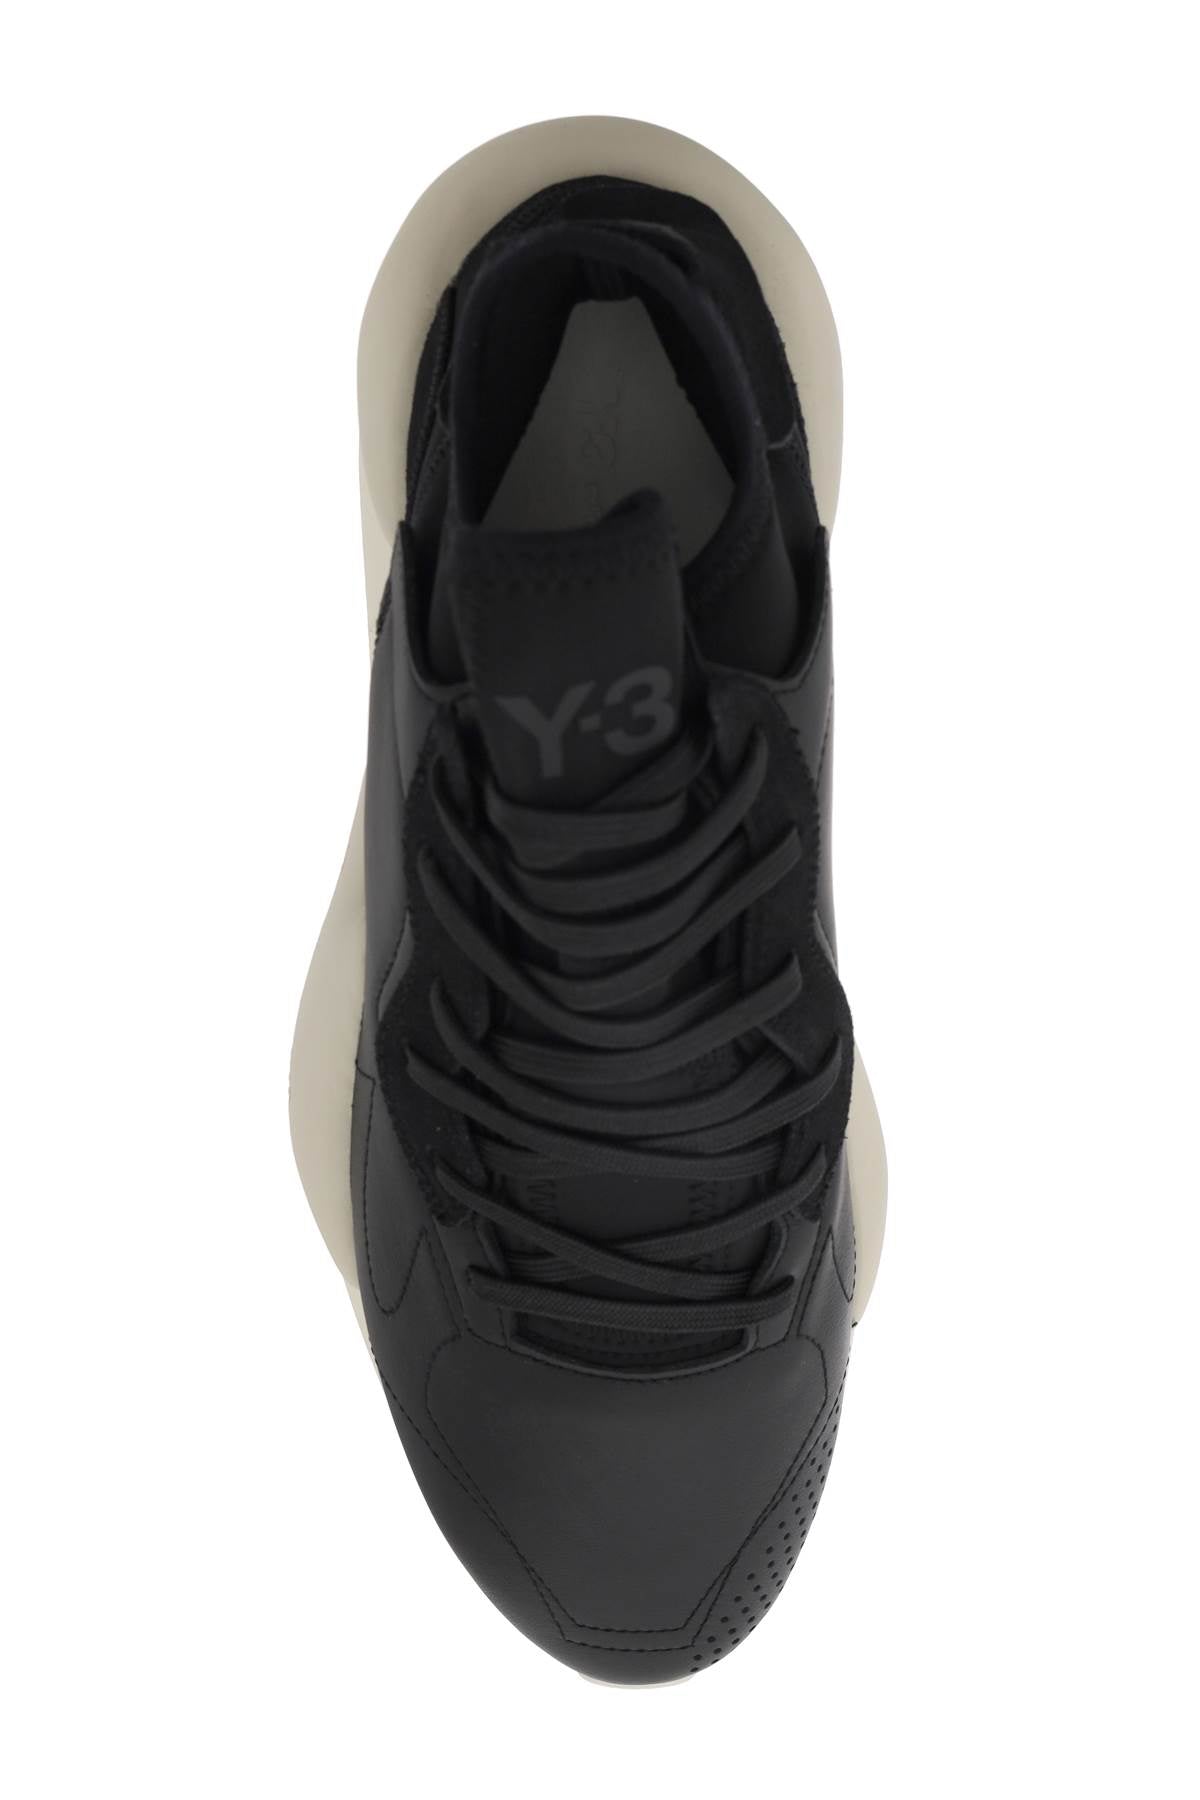 Y-3 y-3 kaiwa sneakers-Y-3-Urbanheer